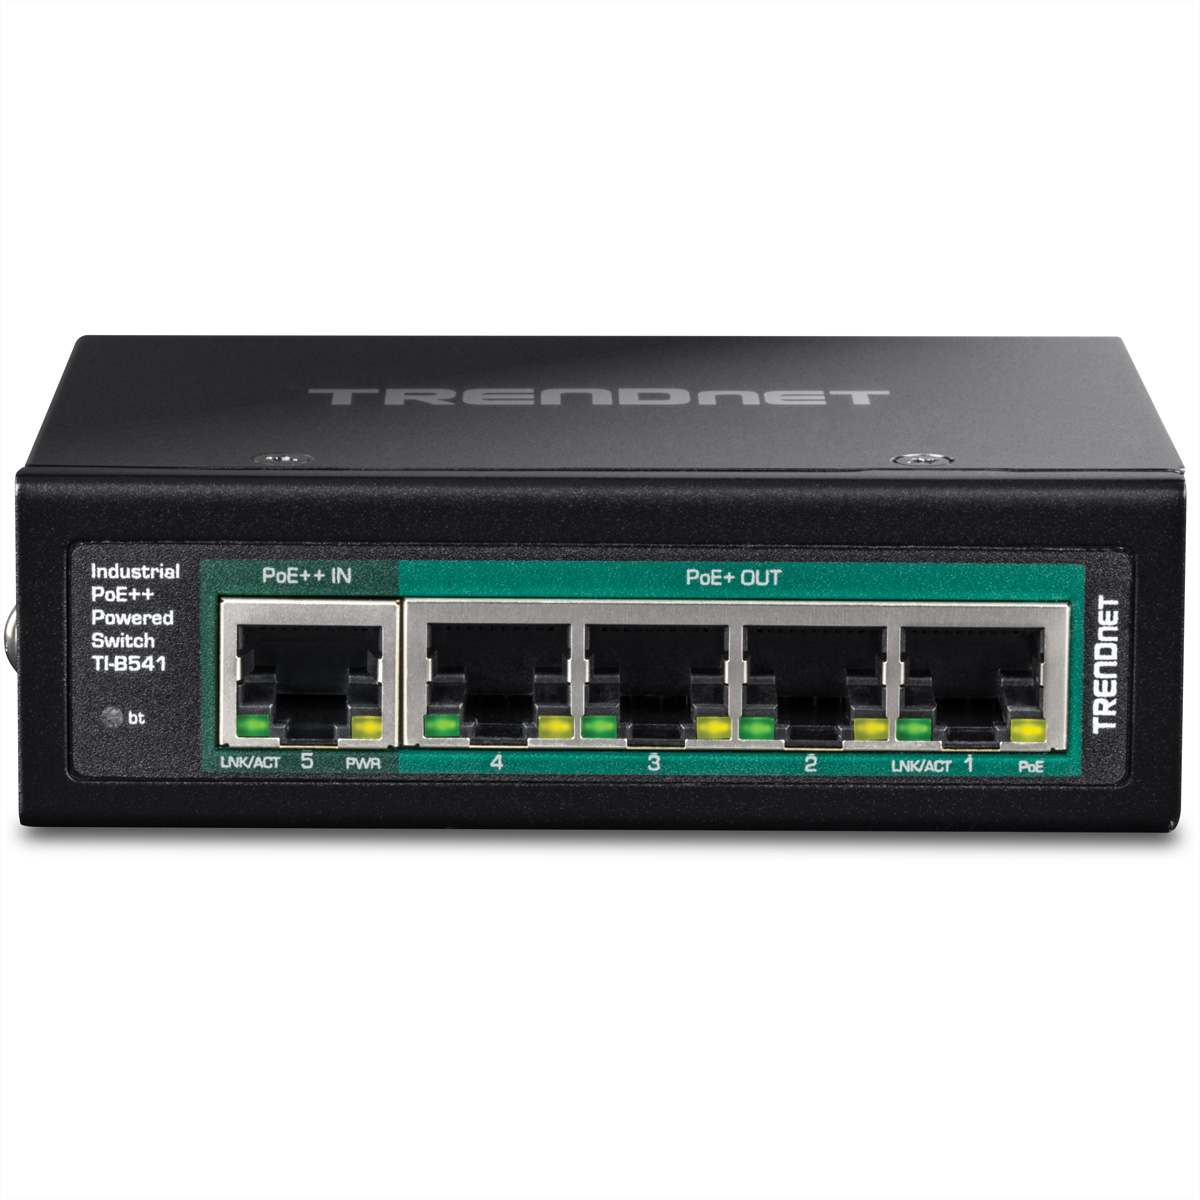 Netzwerk-Switch 5-Port TRENDNET Switch TI-B541 DIN-Rail